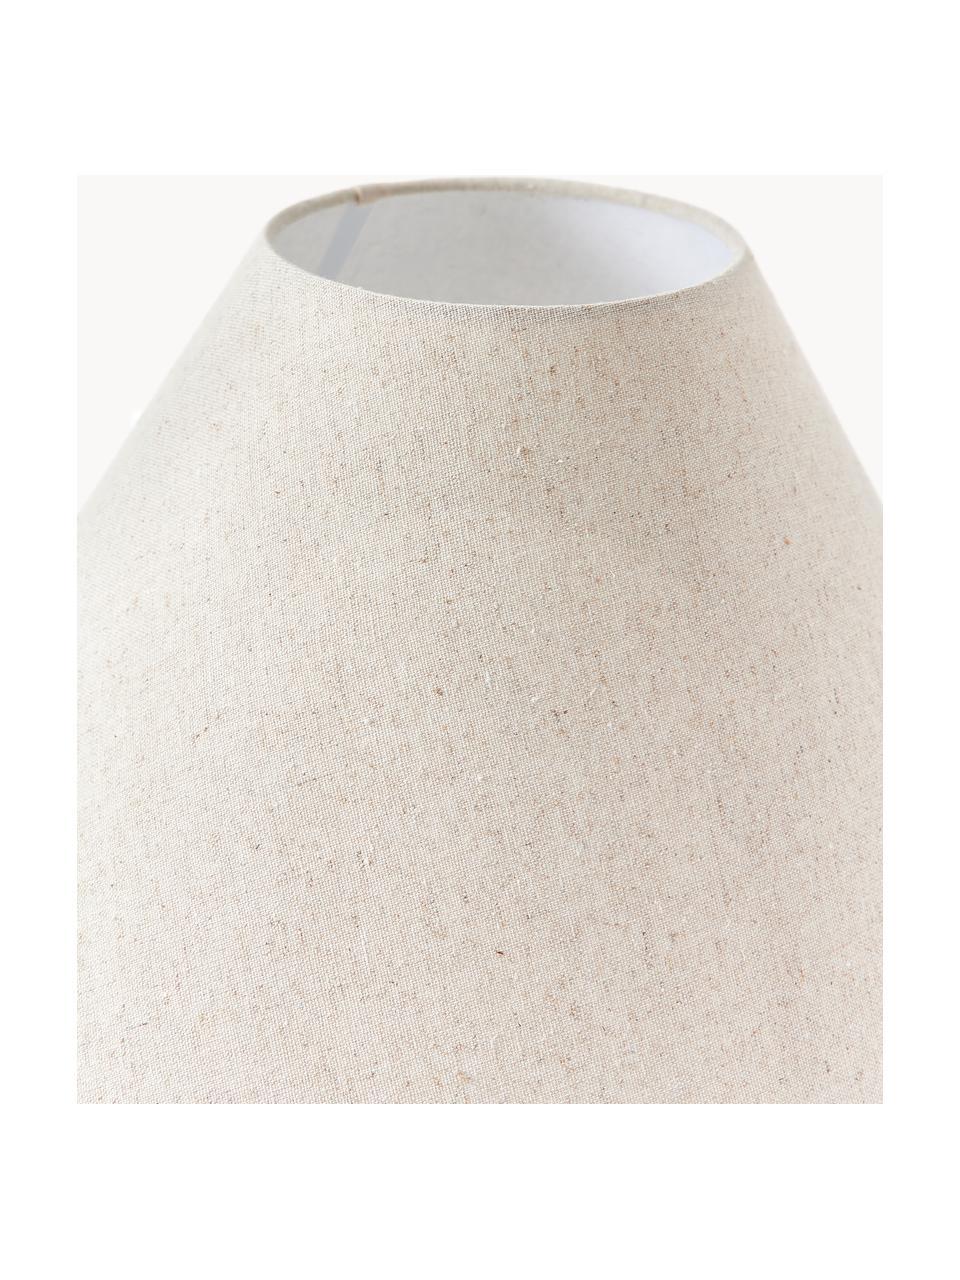 Große Tischlampe Gia mit Marmorfuß, Lampenschirm: 80% Baumwolle, 20% Leinen, Lampenfuß: Marmor, Beige, marmoriert, Ø 46 x H 60 cm